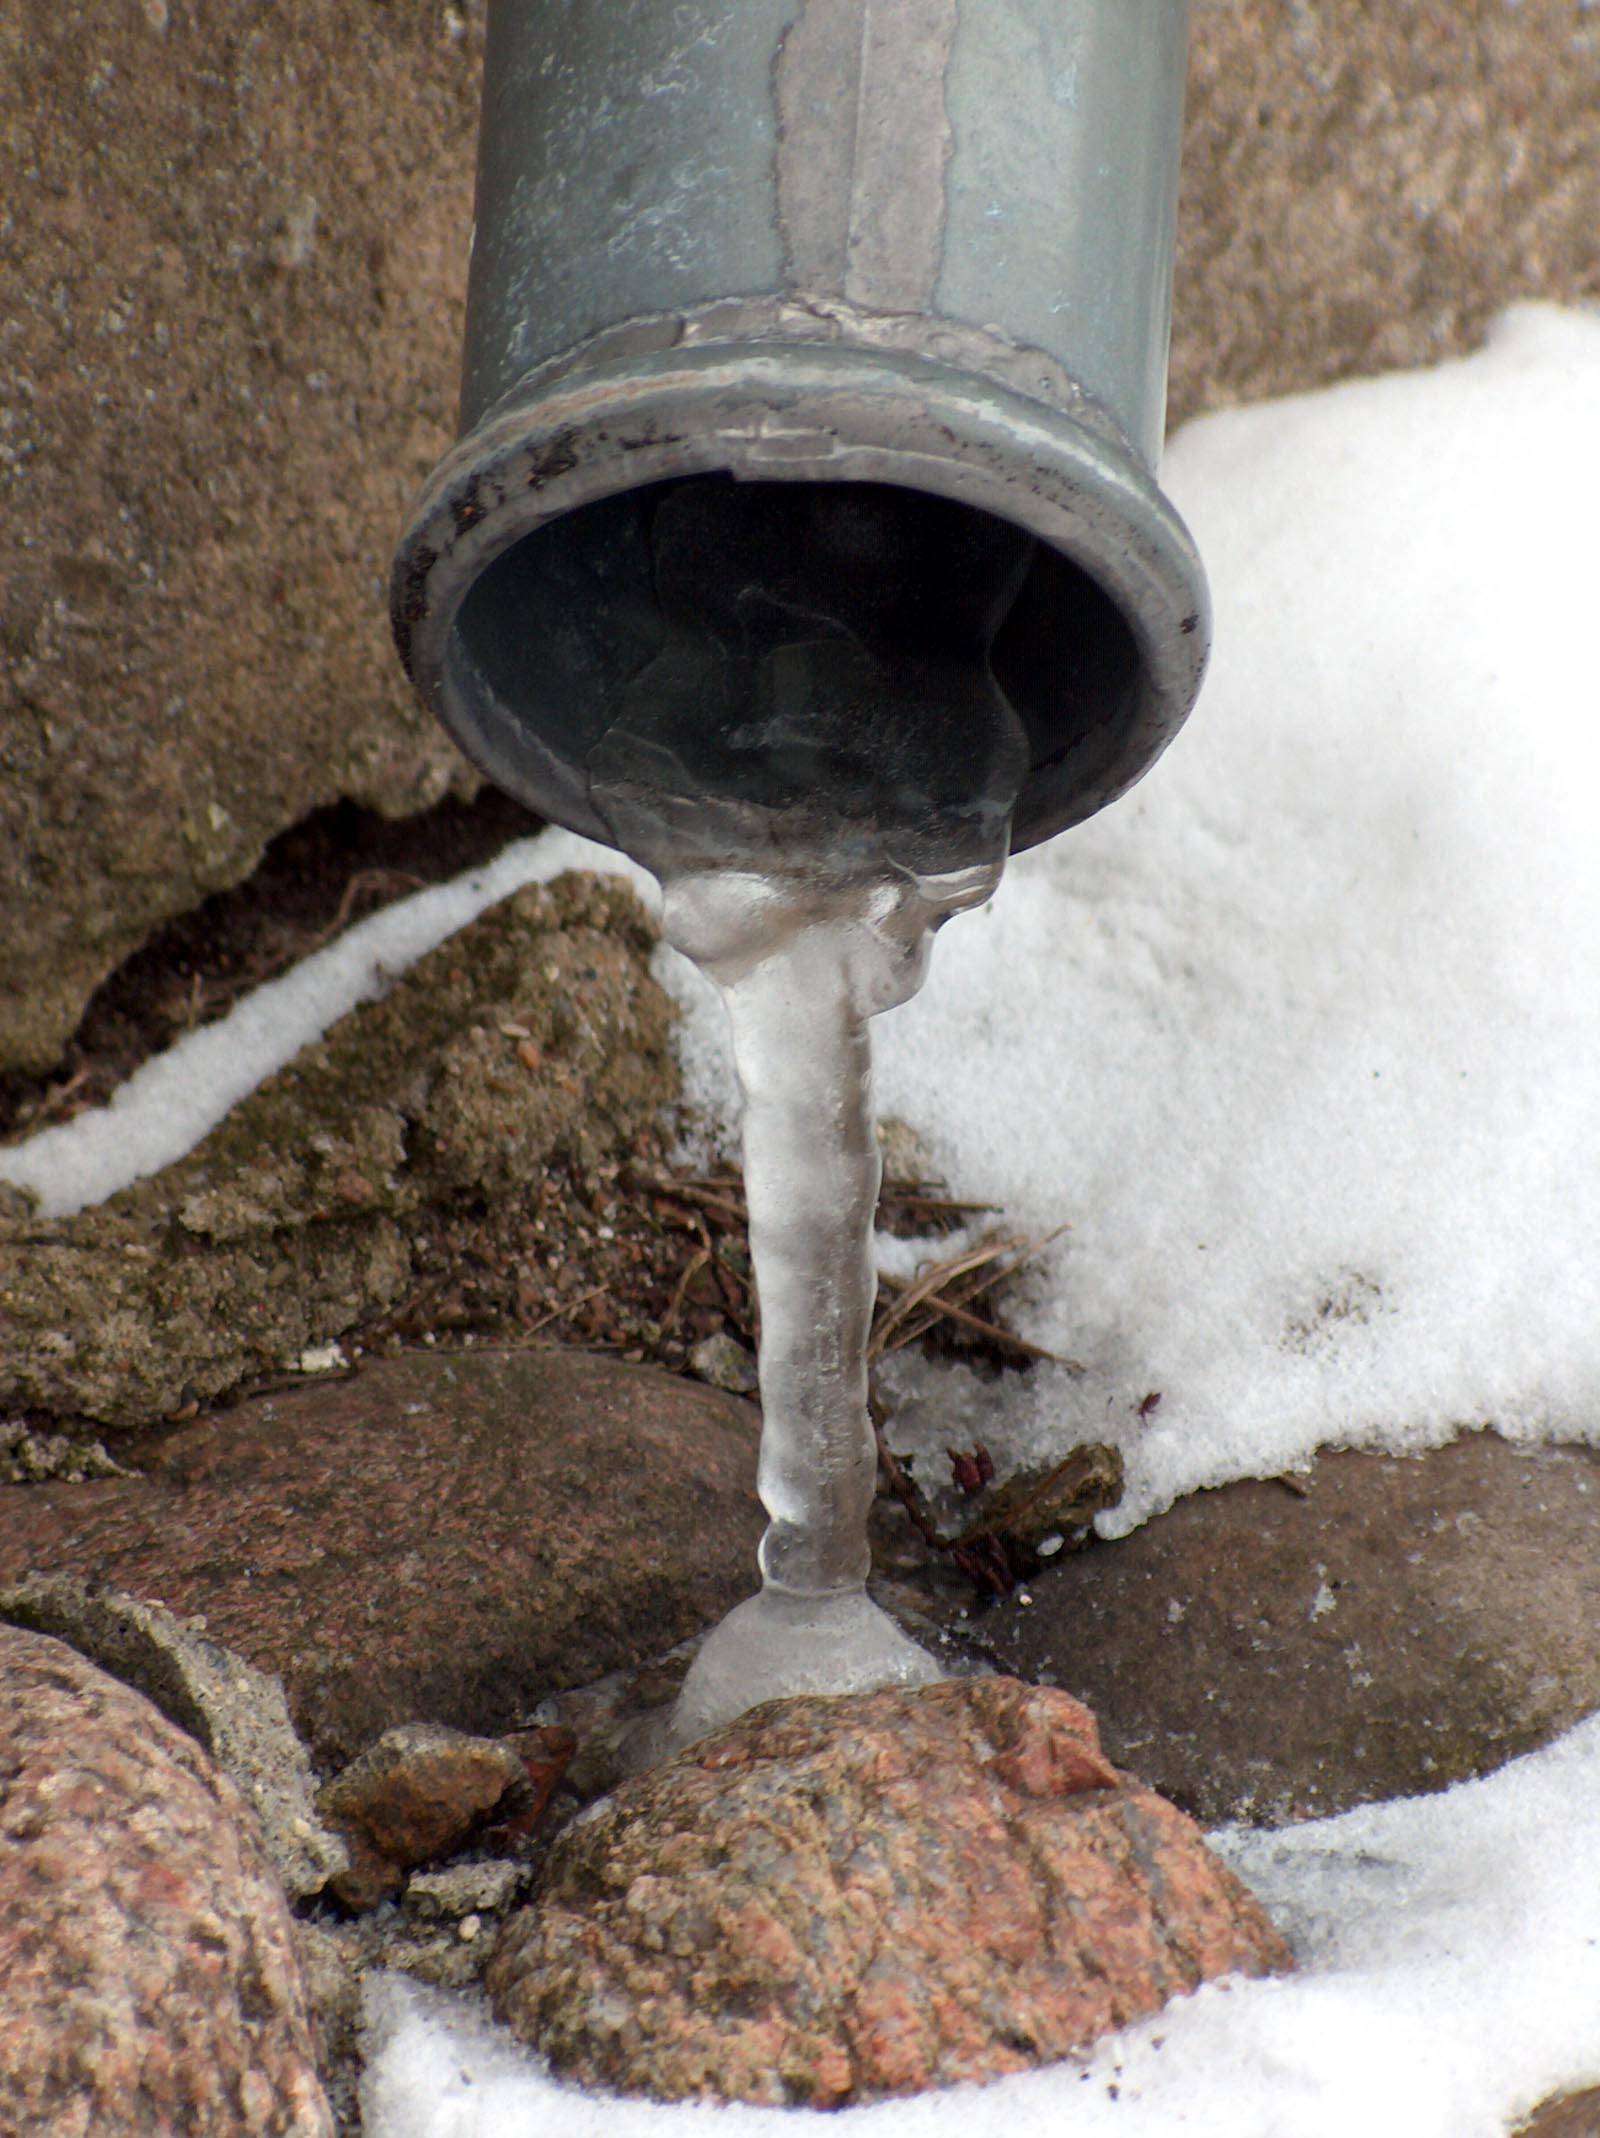 Как отогреть замерзшую трубу: способы разморозки воды в пластиковых и металлических коммуникациях